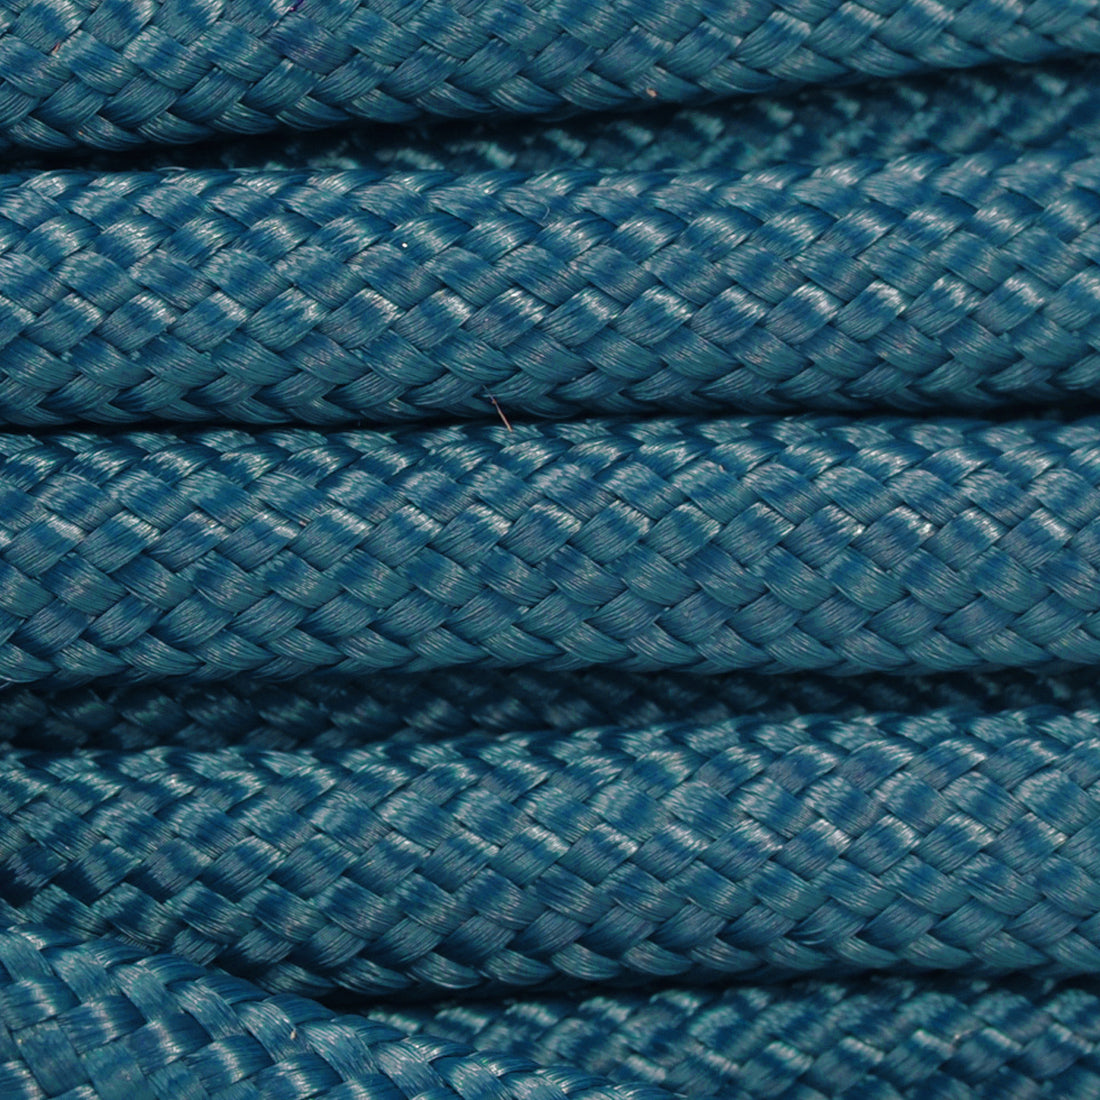 Blaues Seil